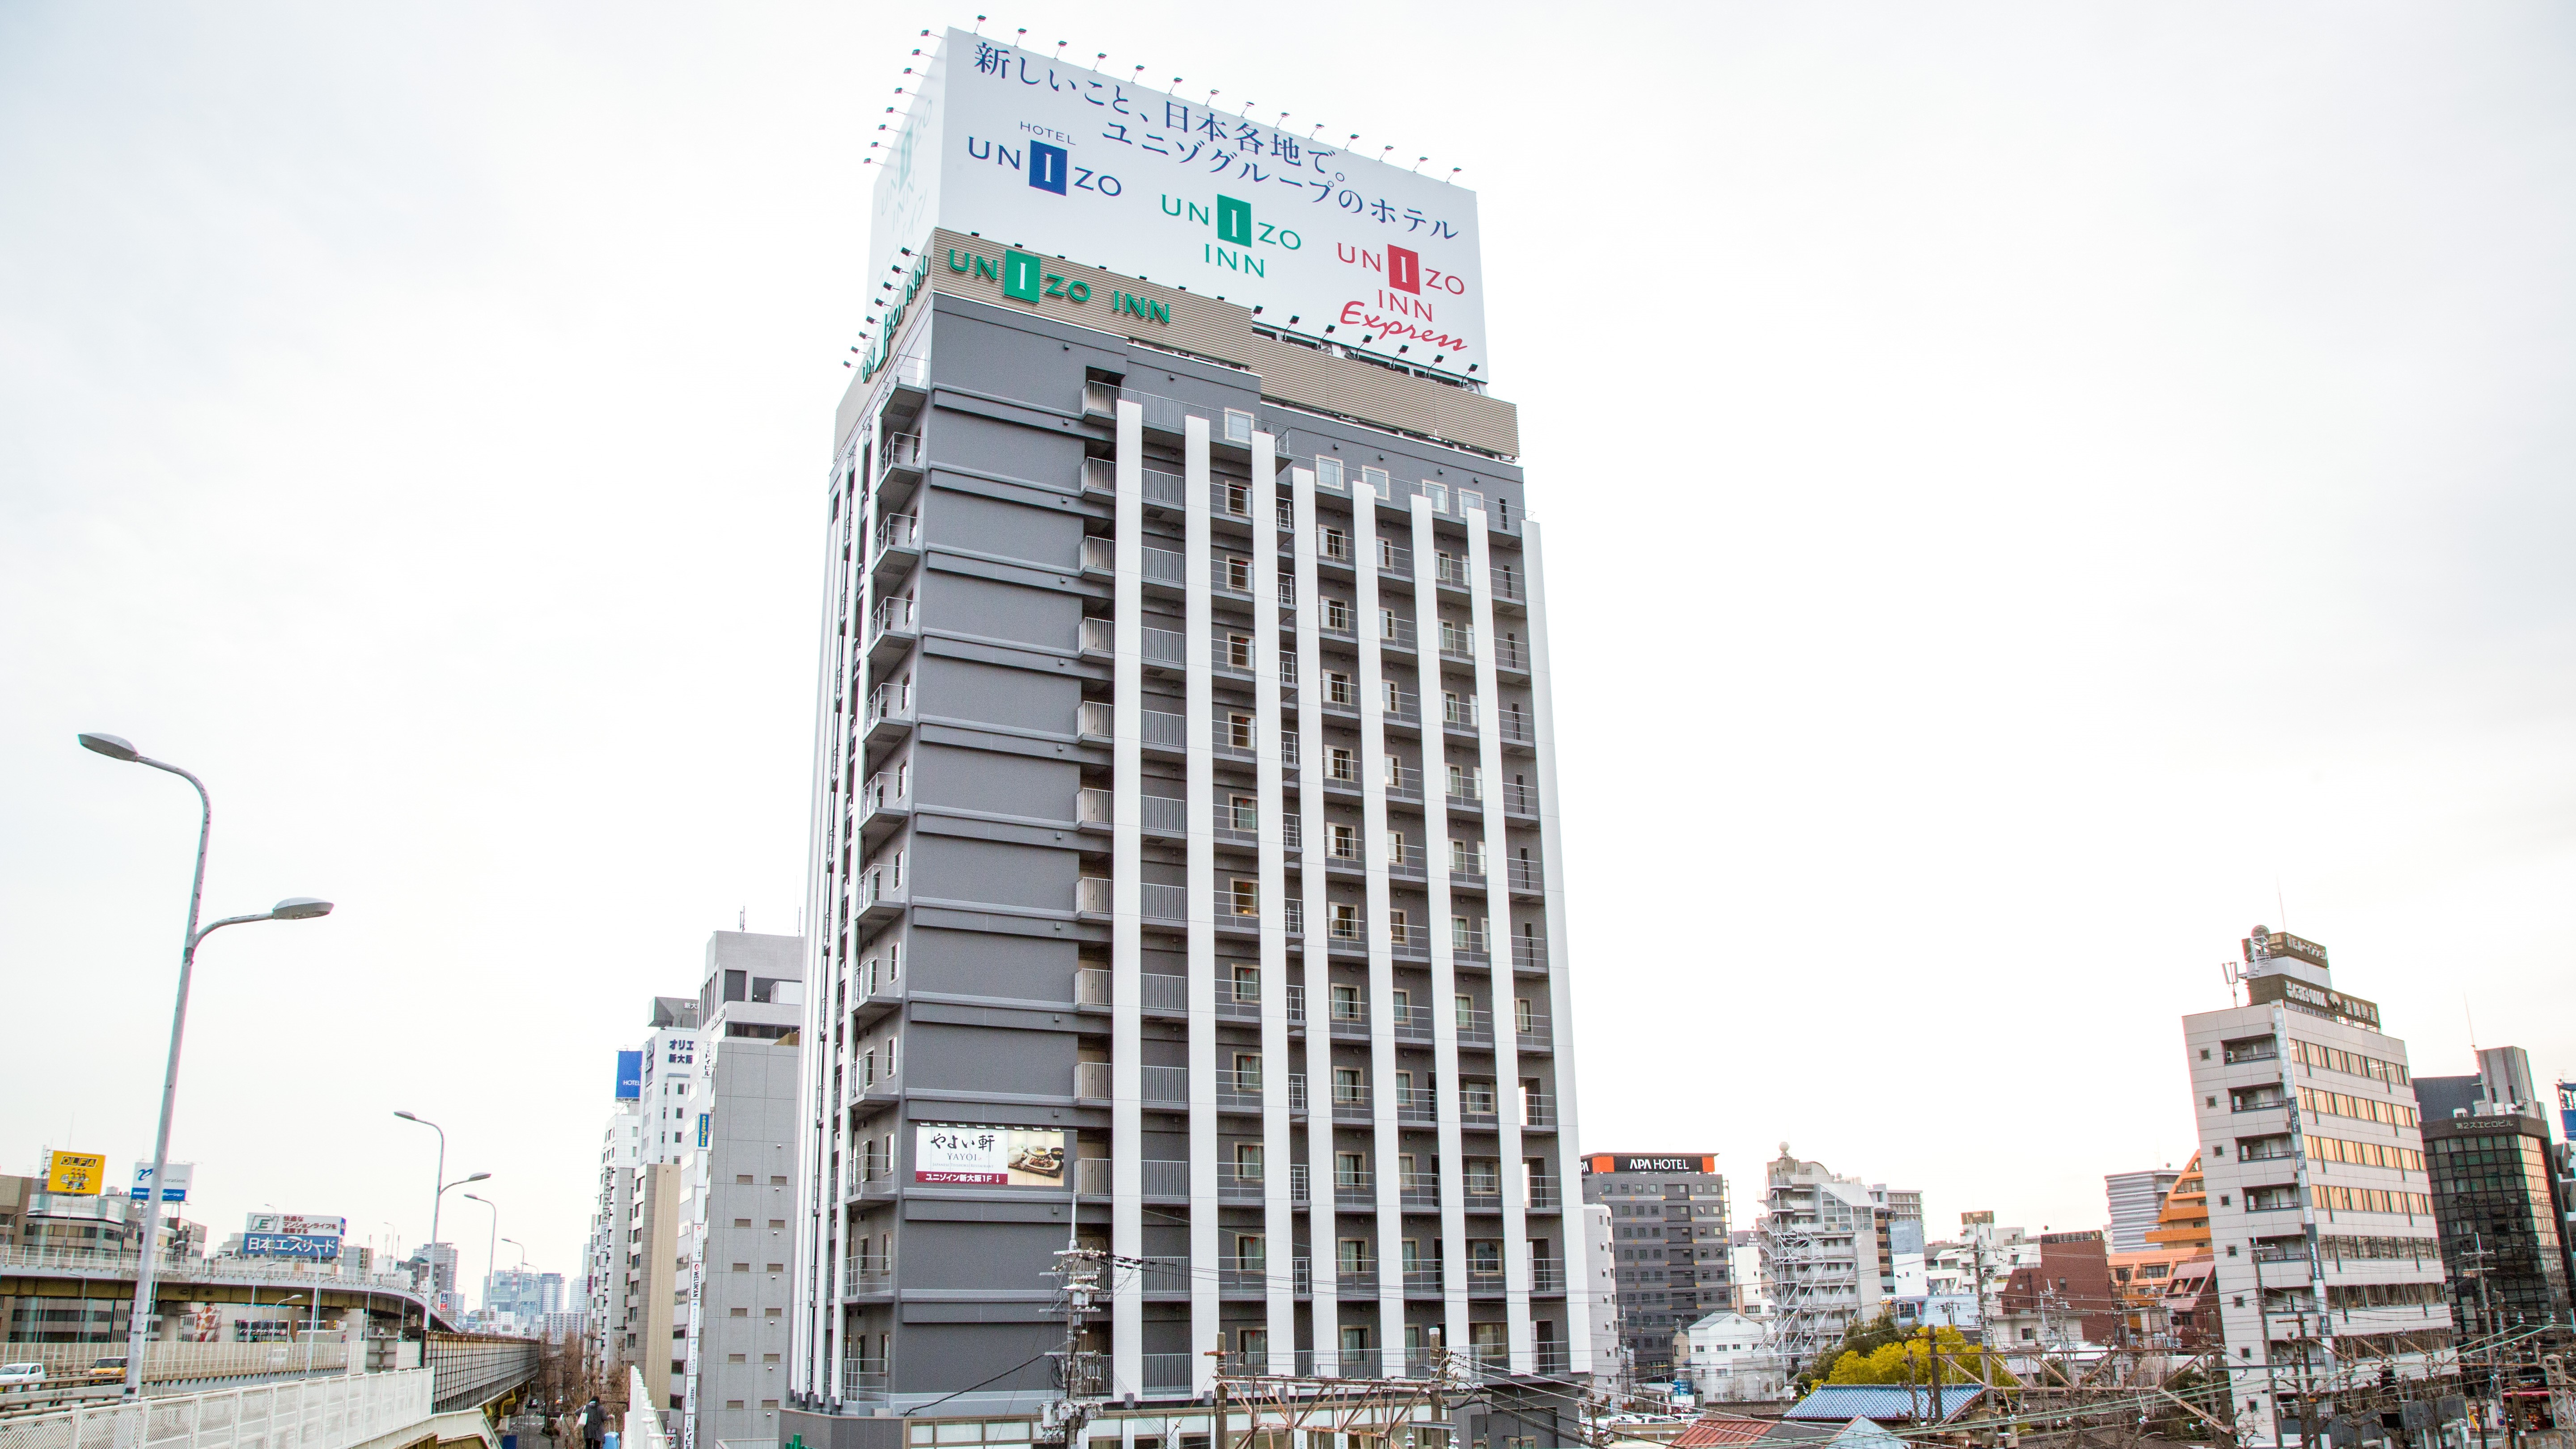 新大阪 Unizo 飯店